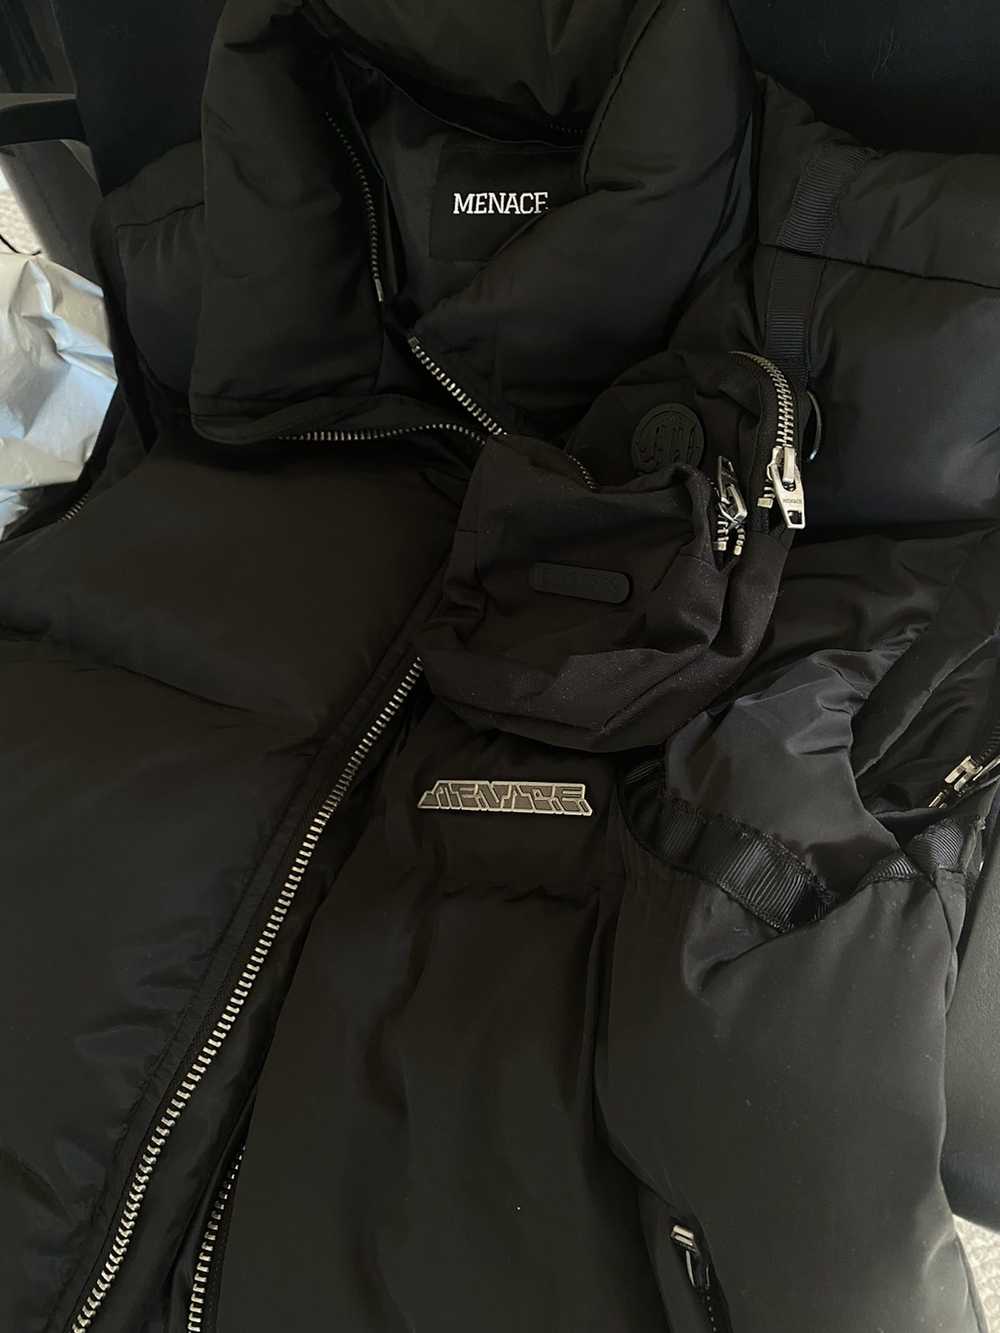 Menace Menace Los Angeles Balaclava Puffer Jacket - image 4